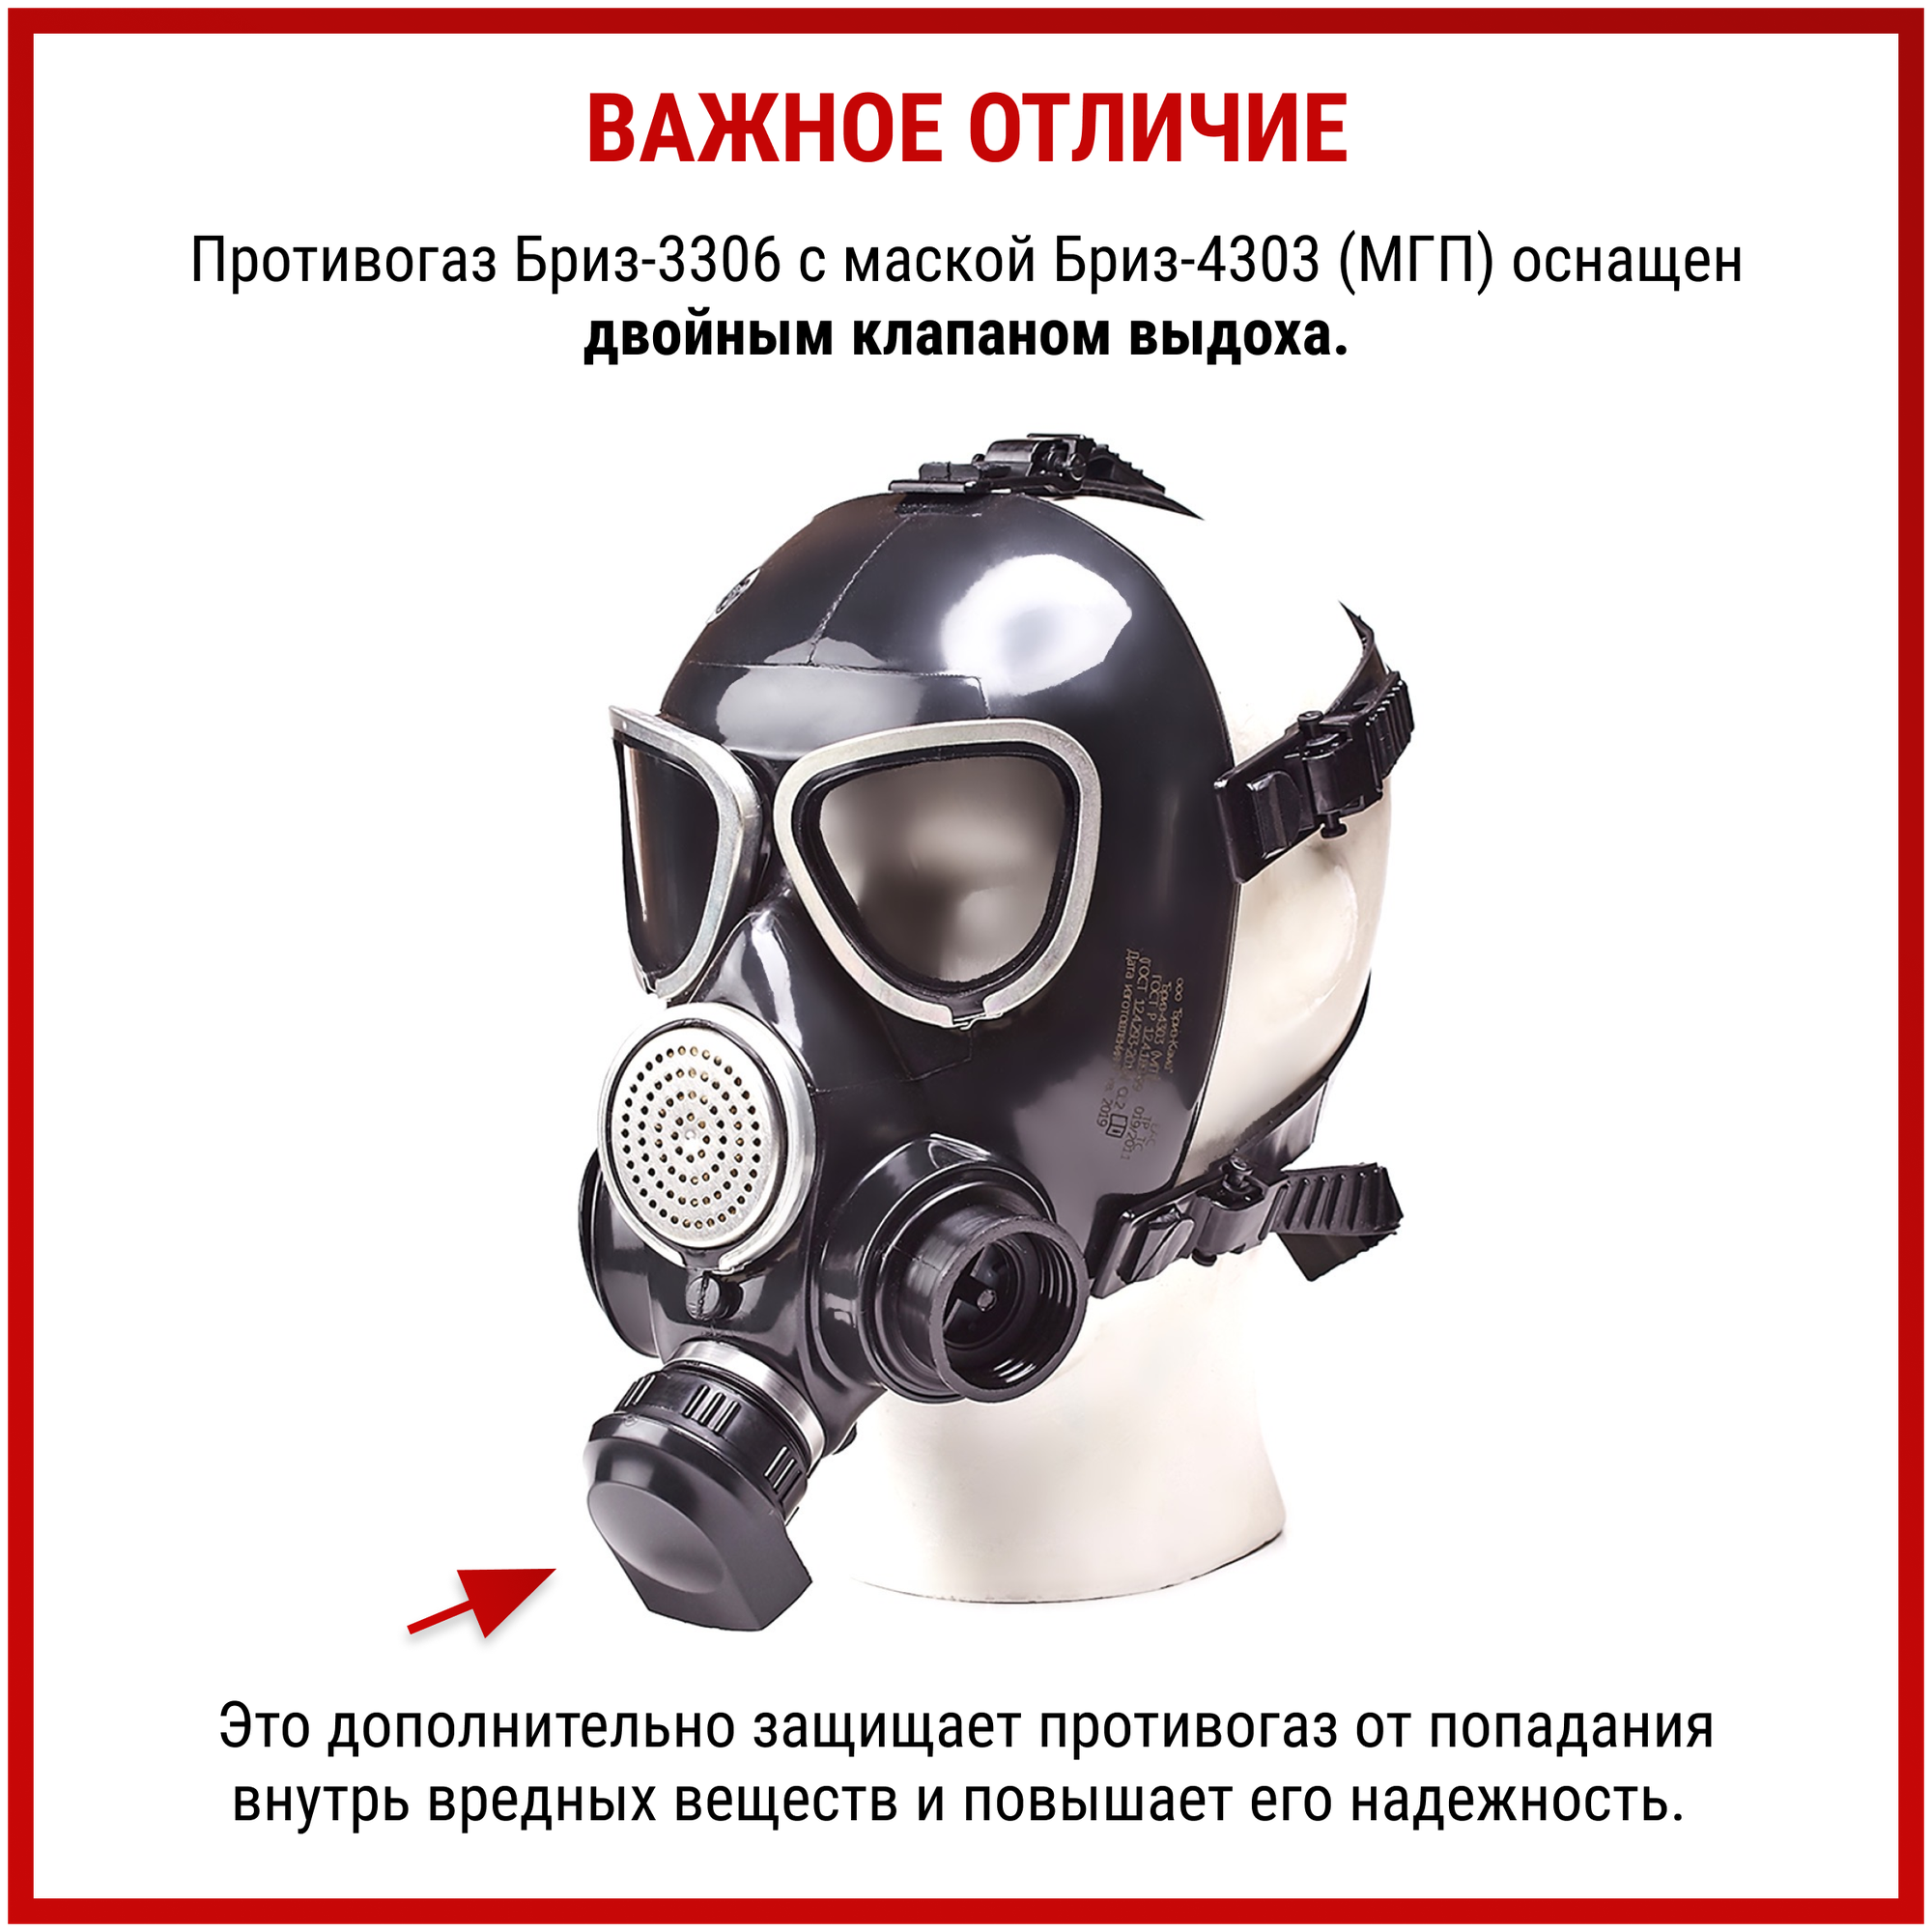 Противогаз Бриз-3306 (МГП) аналог ГП 7 Б маска защитная многоразовая с фильтром респиратор от пыли краски хлора радиоактивных веществ ffp3, размер S - фотография № 3